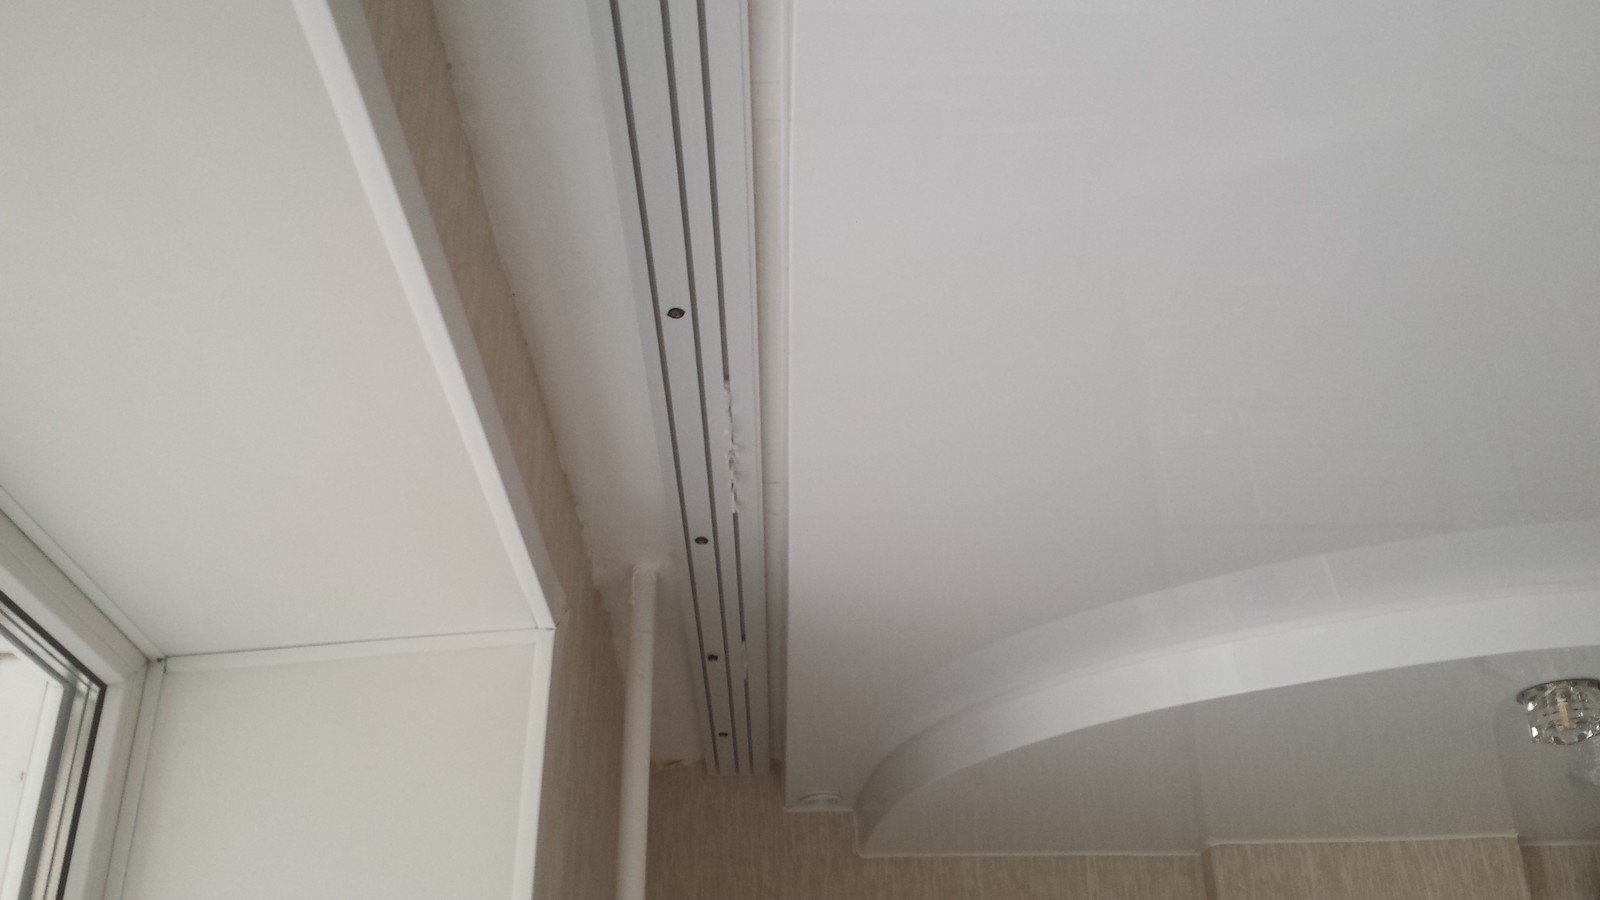 натяжной потолок с карнизом для штор к потолку с подсветкой